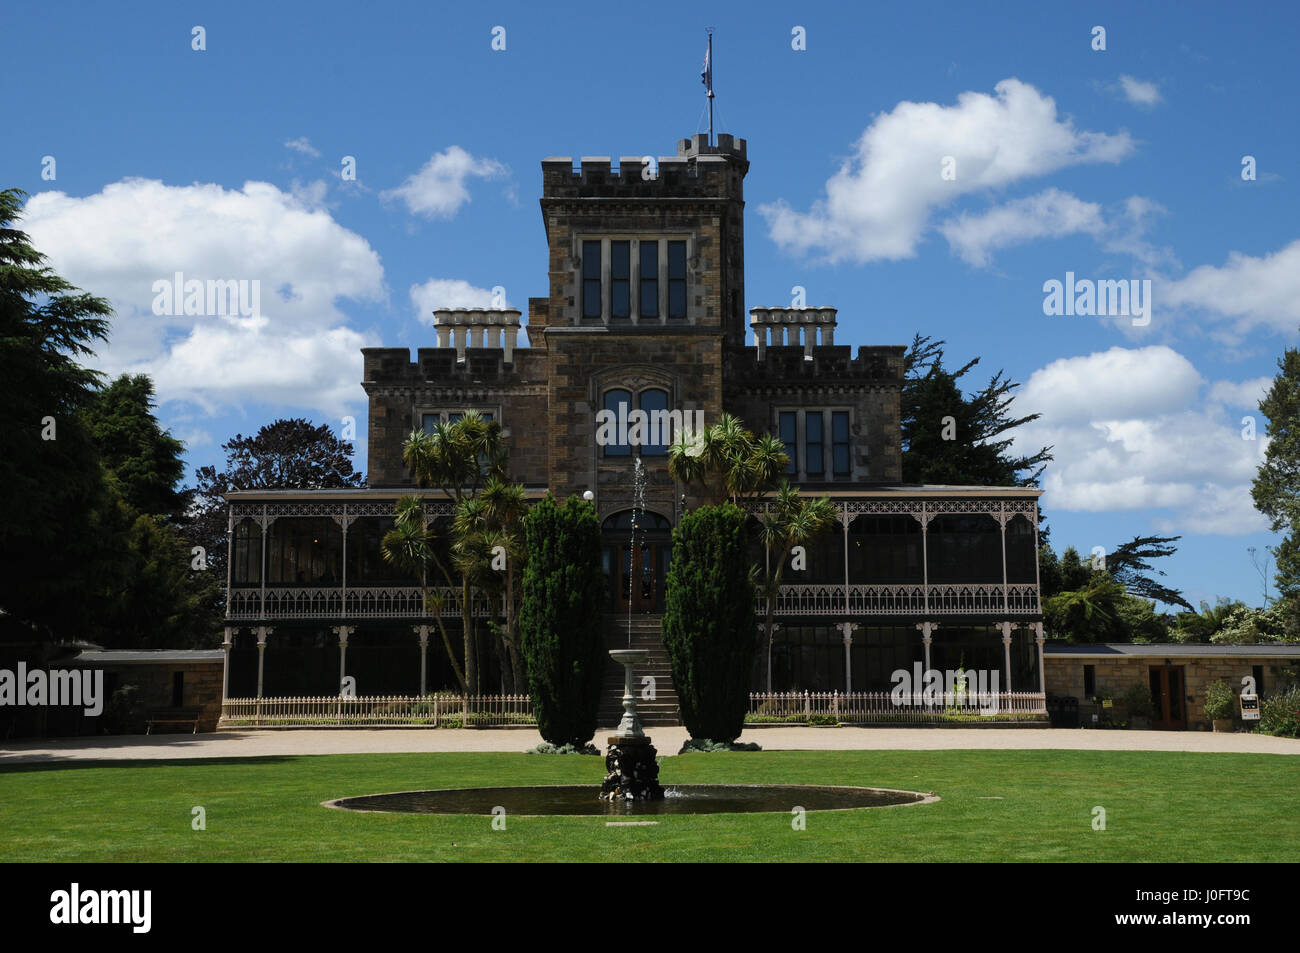 Larnach Castle, nr. Dunedin sur l'île Sud de la Nouvelle-Zélande affirme être le seul château. Il a été construit en 1871 pour William Larnach. Banque D'Images